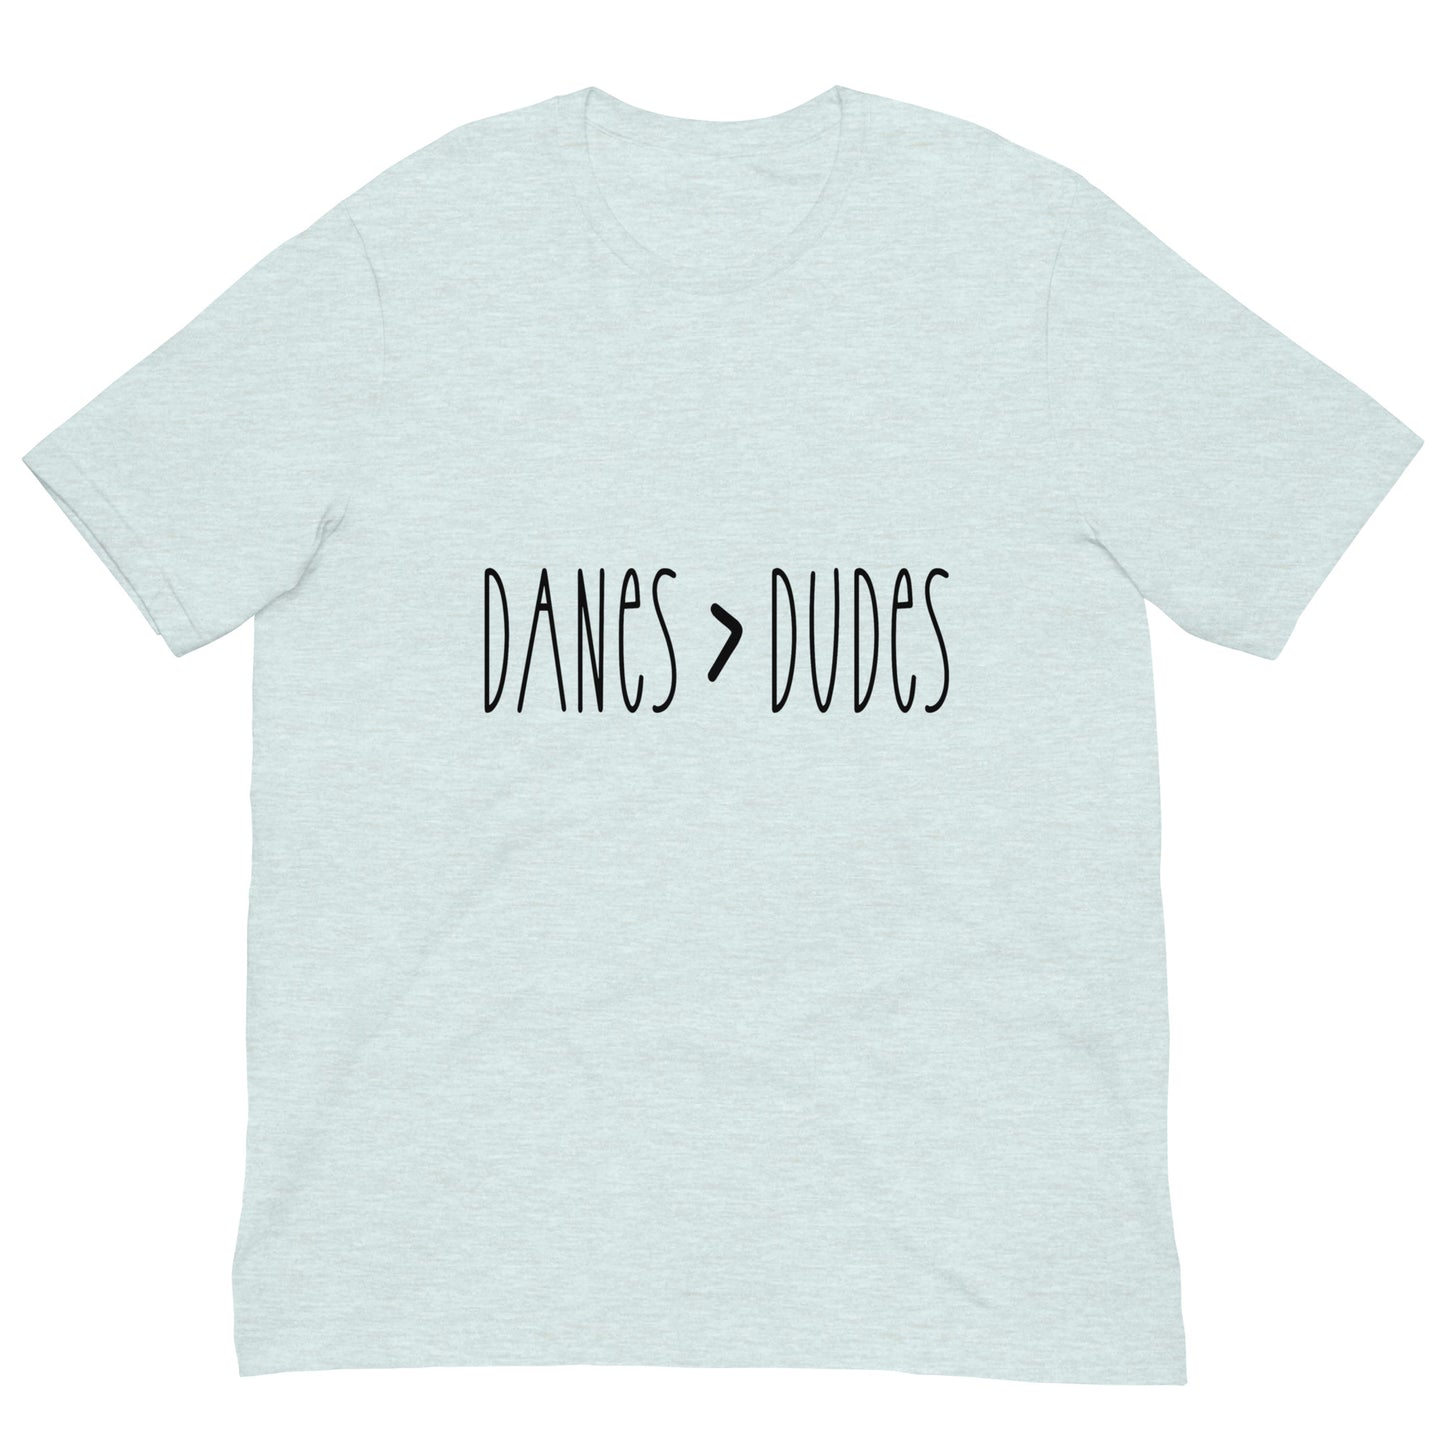 DANES > DUDES